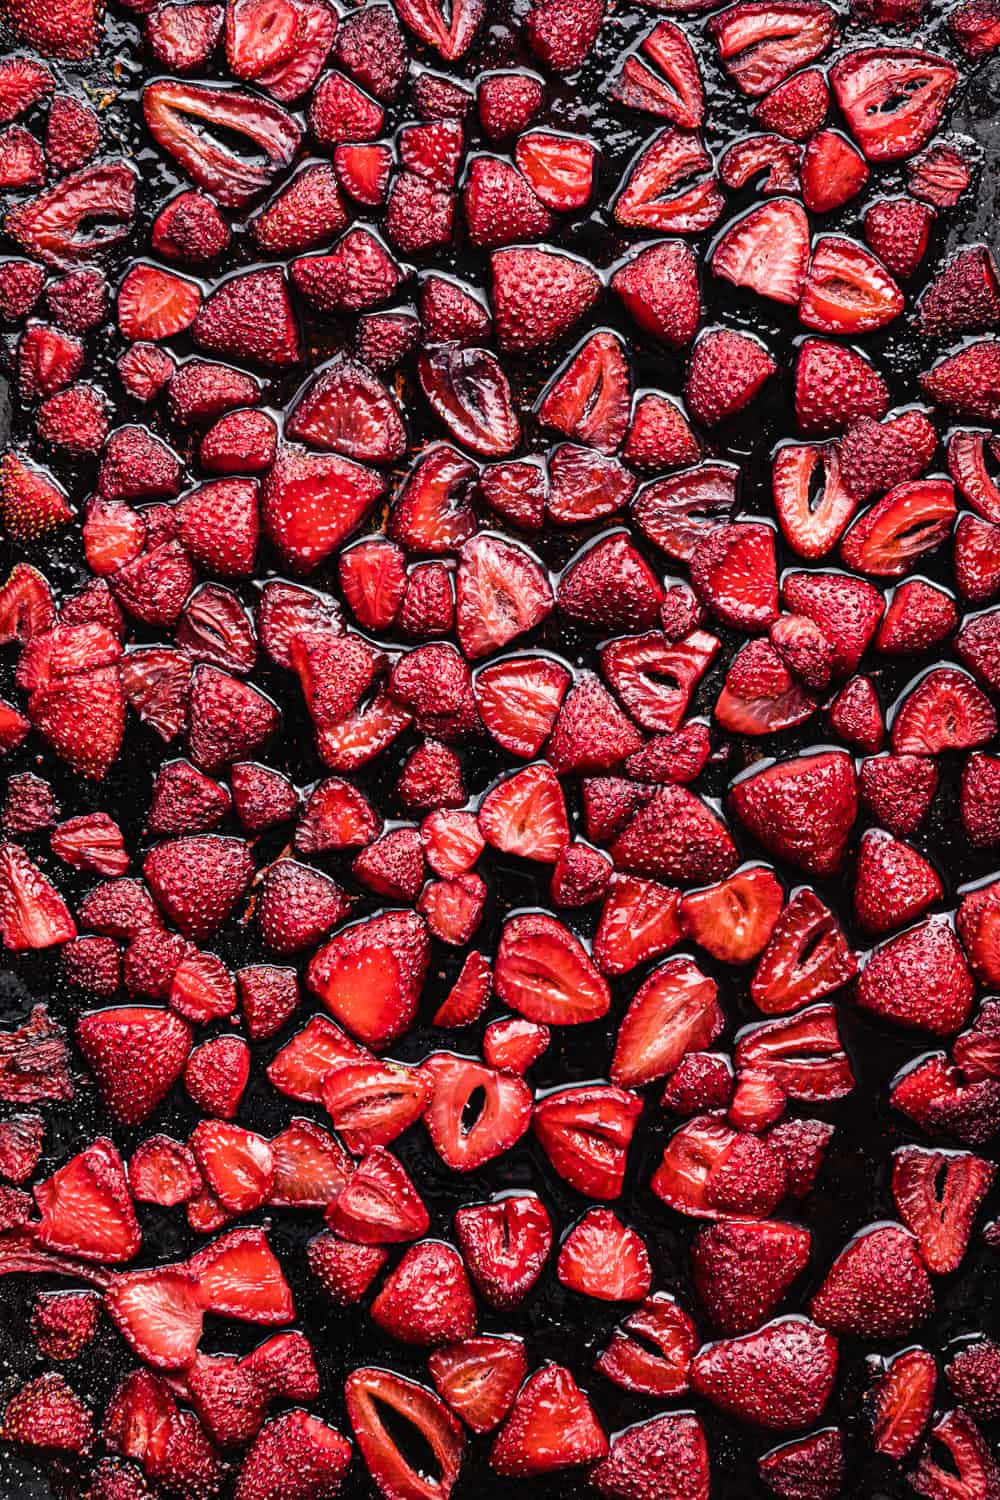 Einbisschen Von Der Süße Der Natur Genießen: Eine Saftige Rote Erdbeere